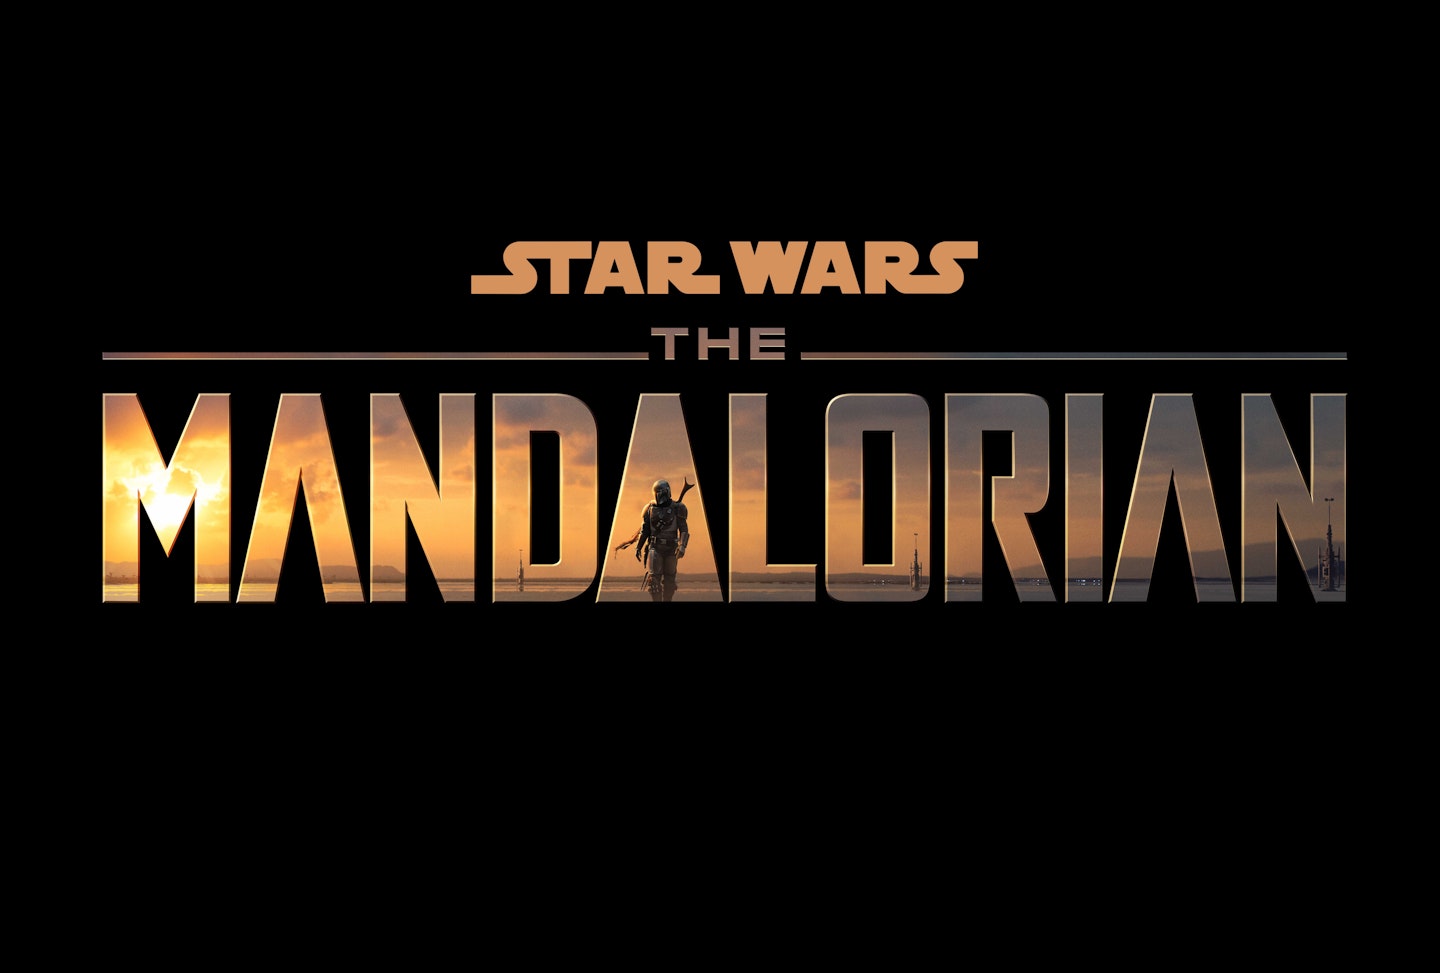 The Mandalorian logo